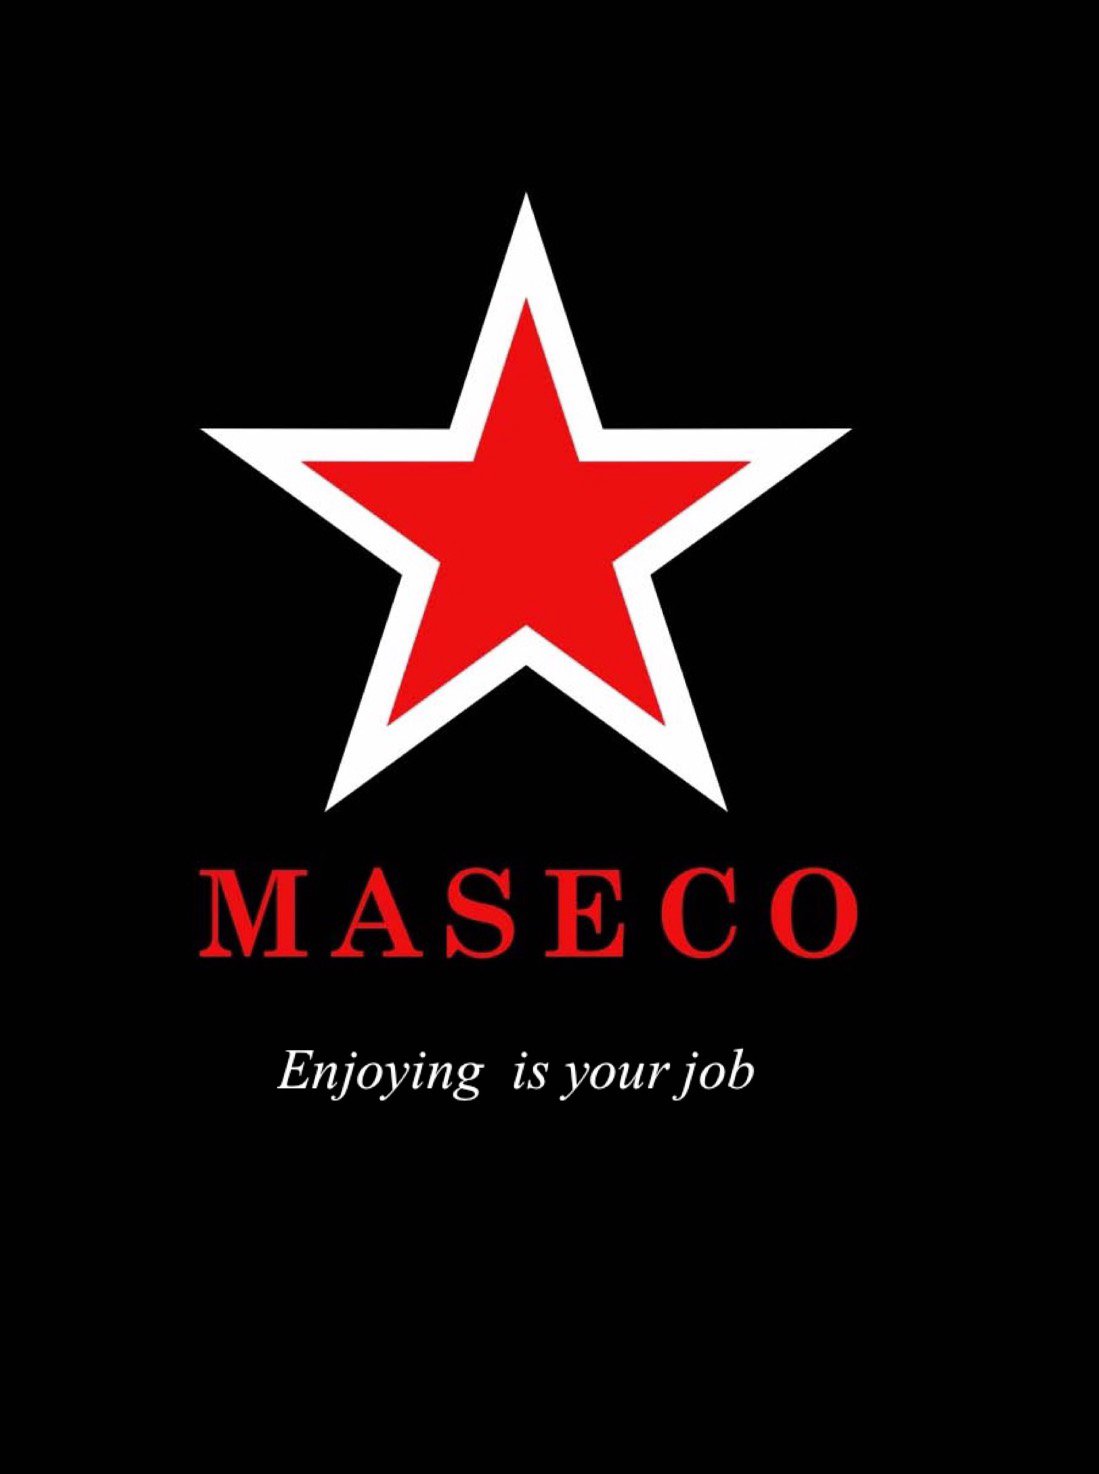  MASECO ENJOYING IS YOUR JOB